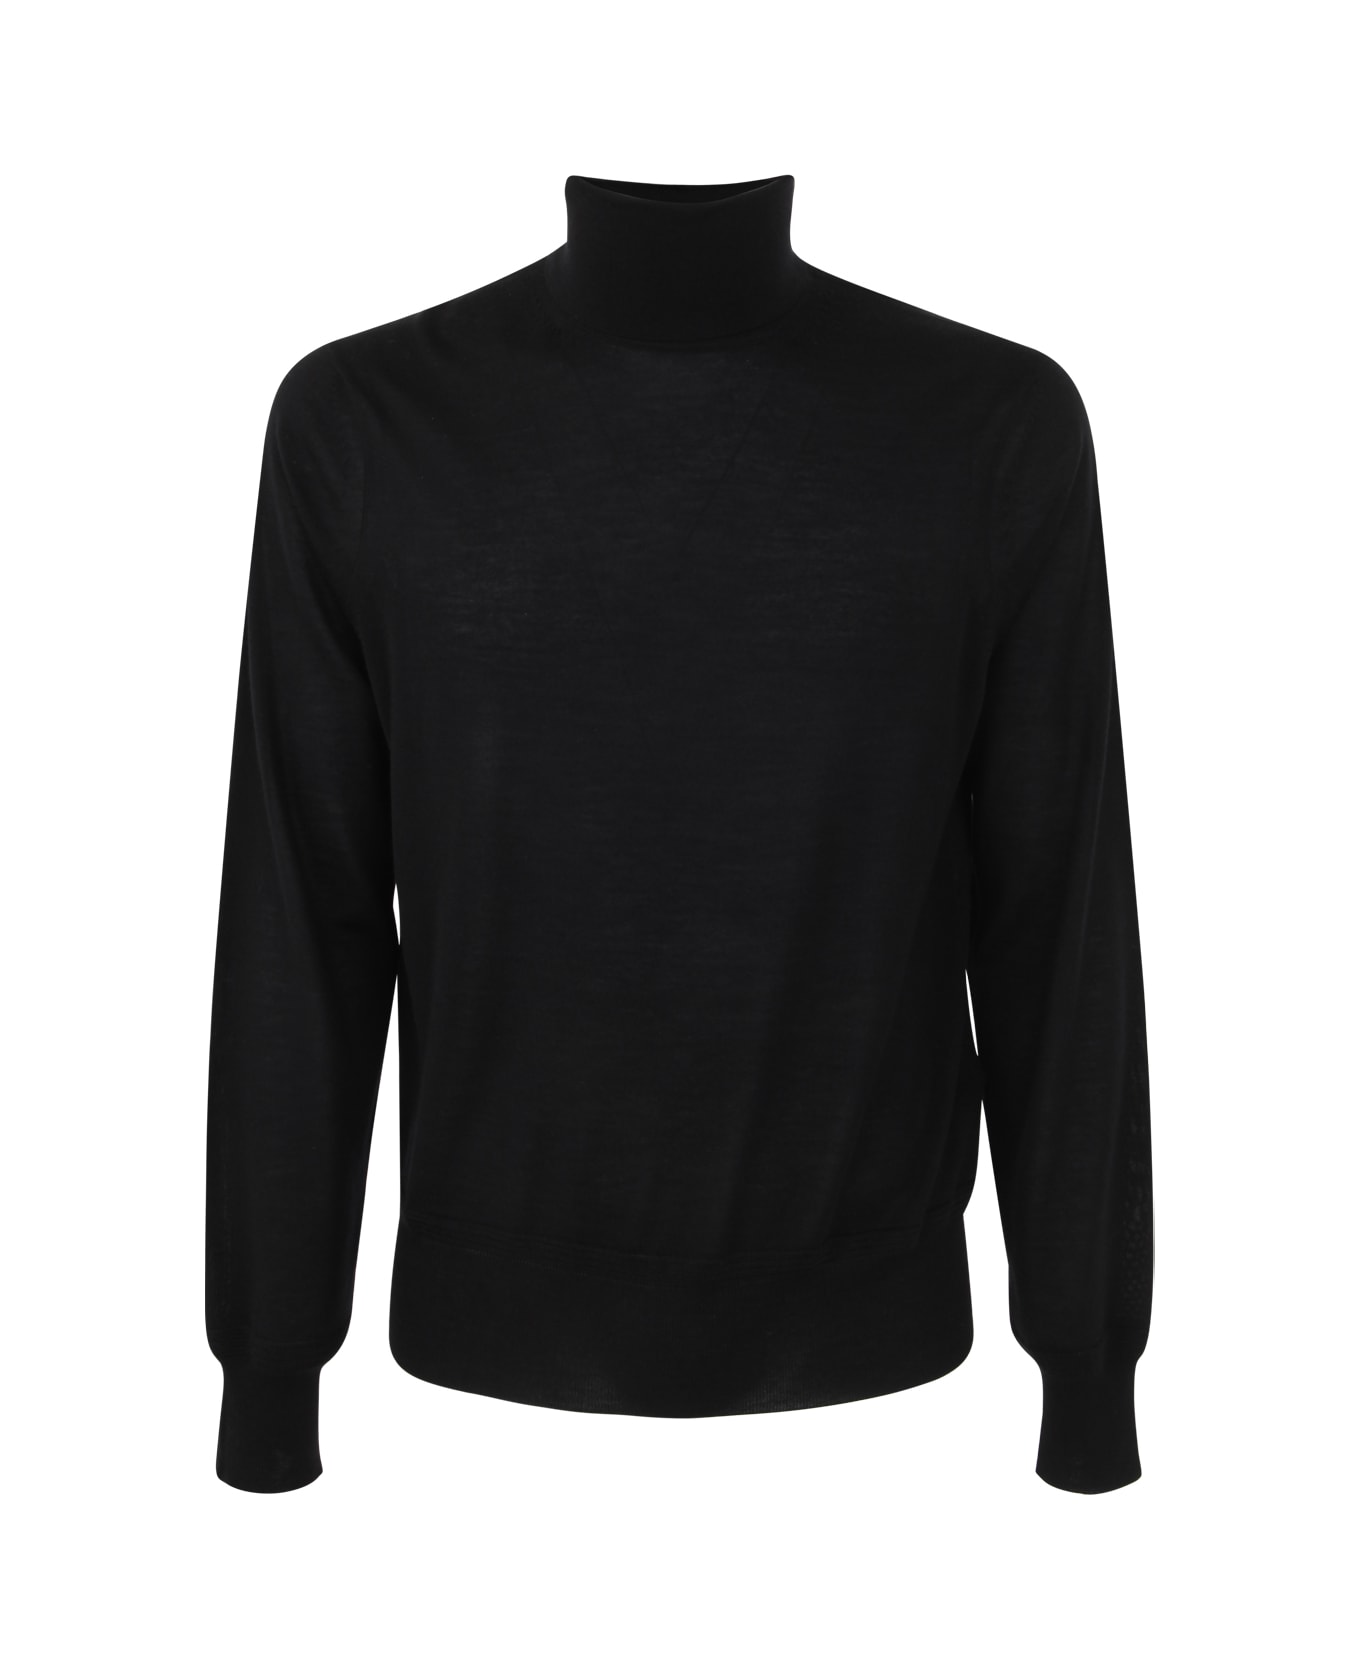 Tom Ford Turtle Neck Sweater - Black ニットウェア